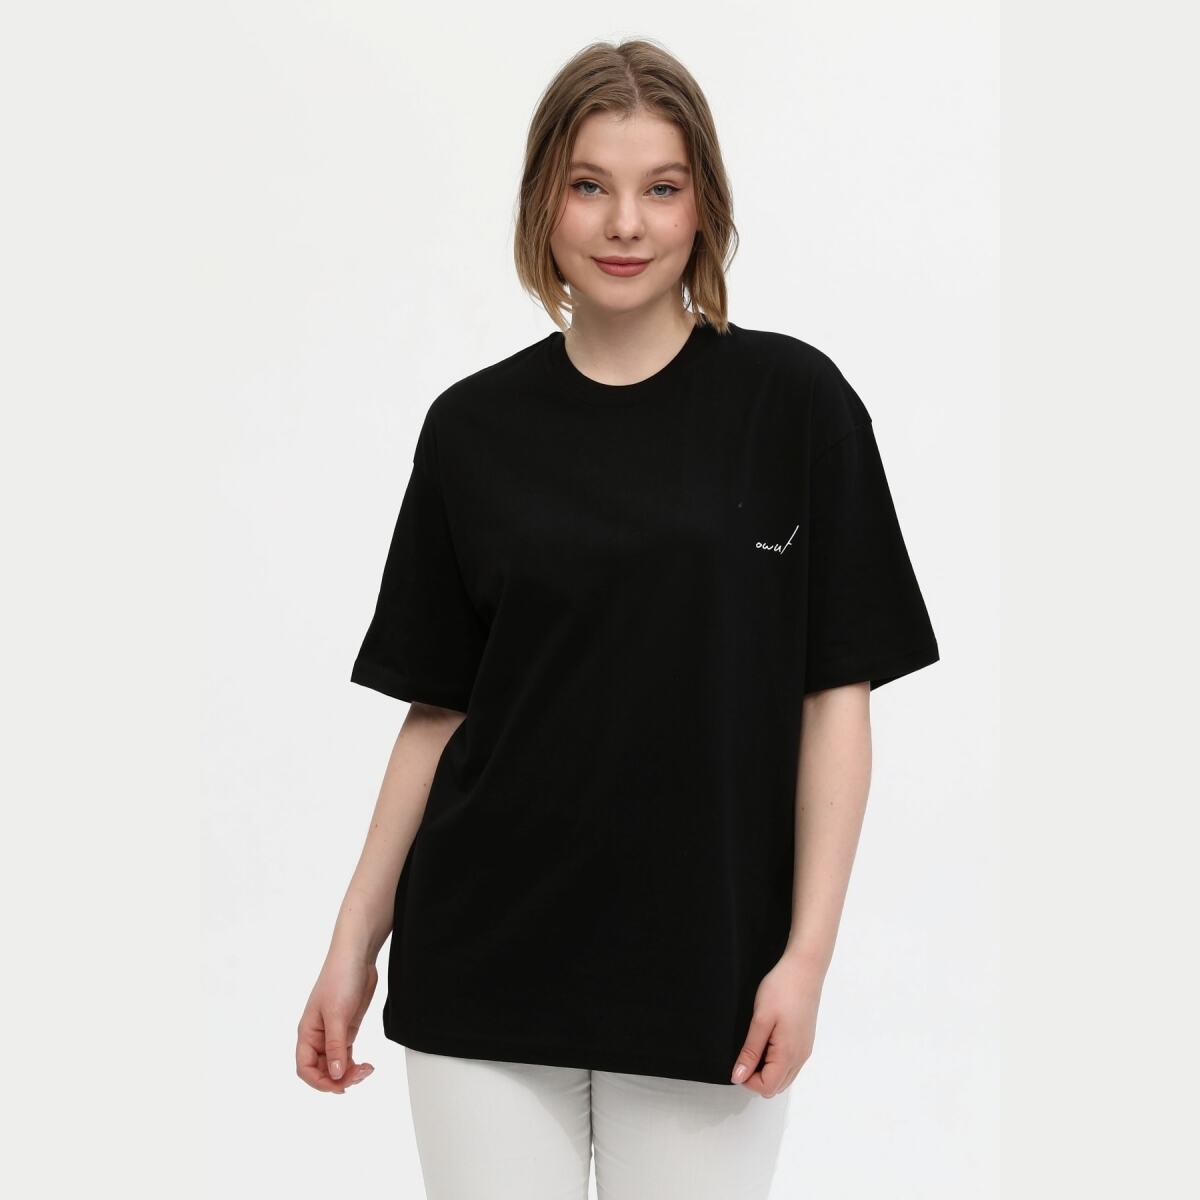 Unisex Siyah %100 Pamuk Baskılı Oversize Dik Yaka Örme T-Shirt